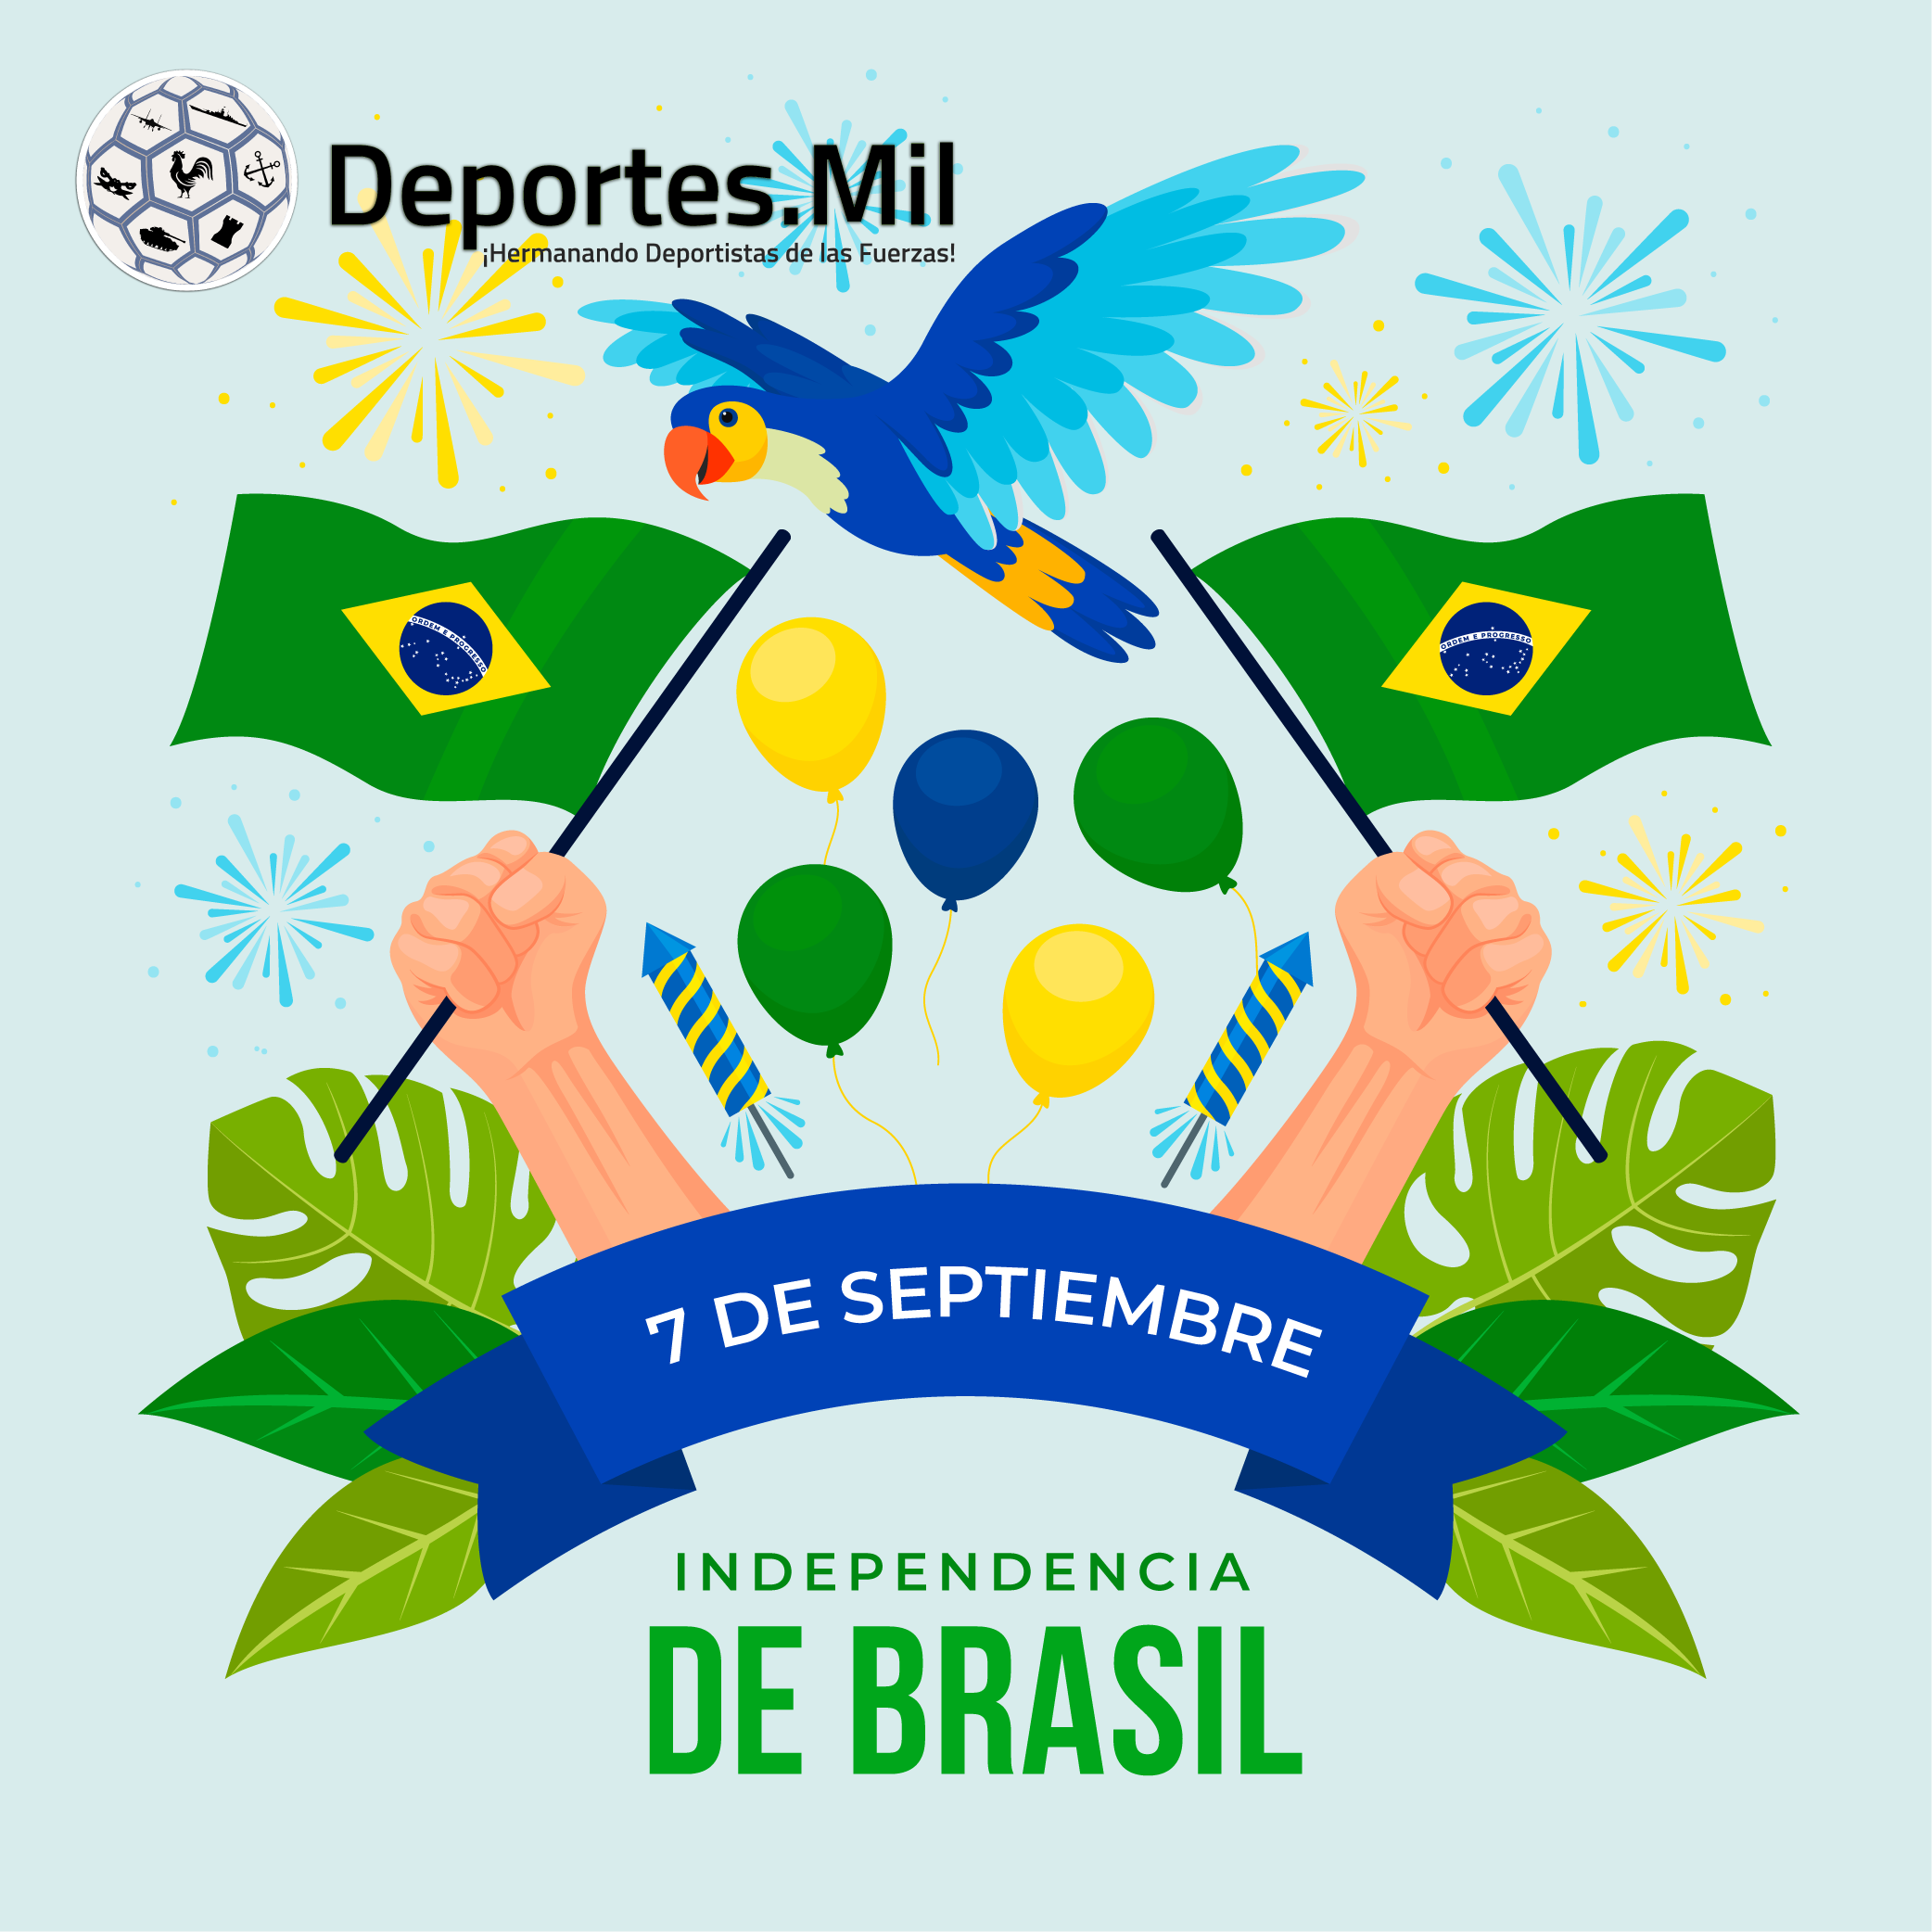 7 de septiembre: Independencia de Brasil